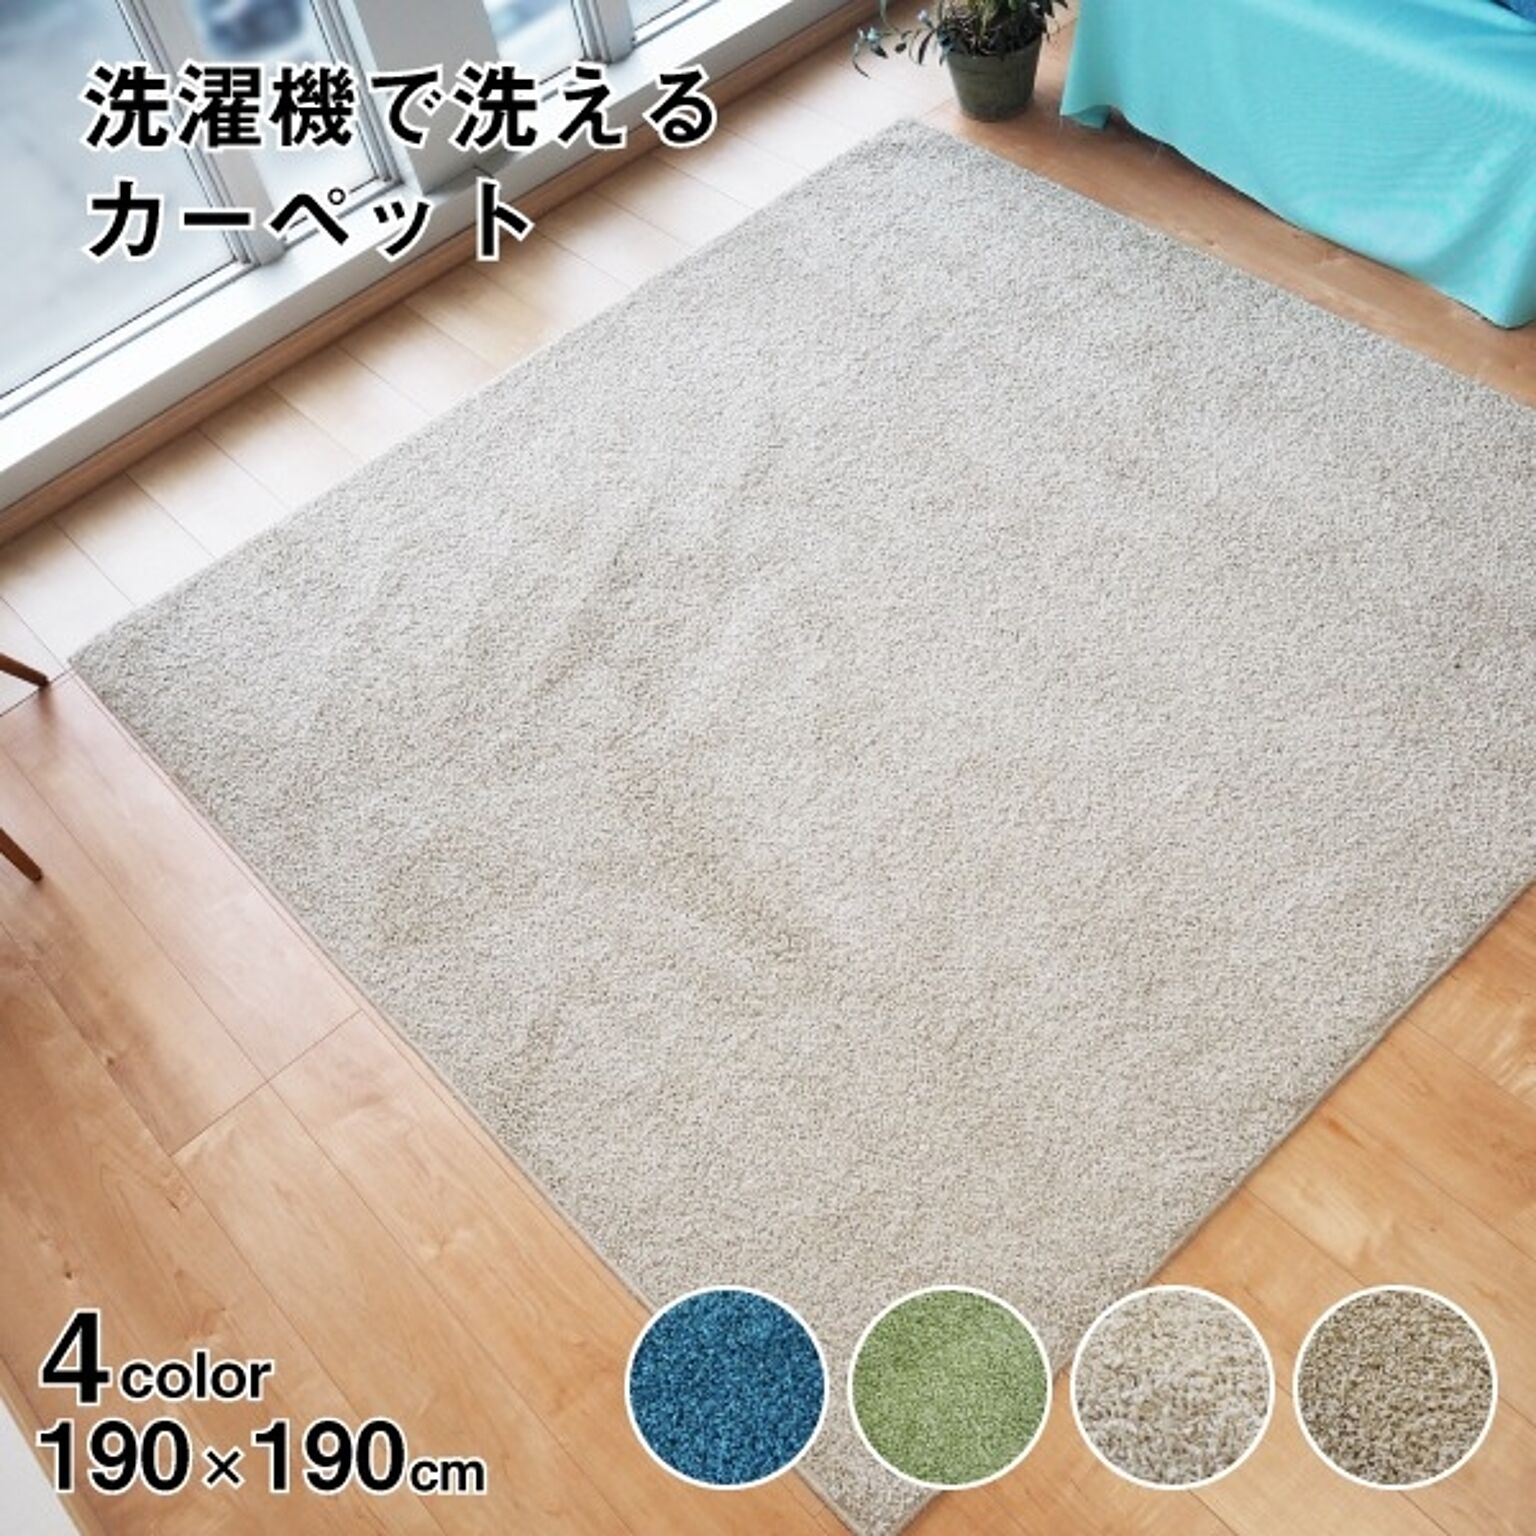 ラグマット 絨毯 約190cm×190cm ライトベージュ 洗える 日本製 防ダニ 抗菌防臭 床暖房 ホットカーペット 通年使用 ウォッシュ